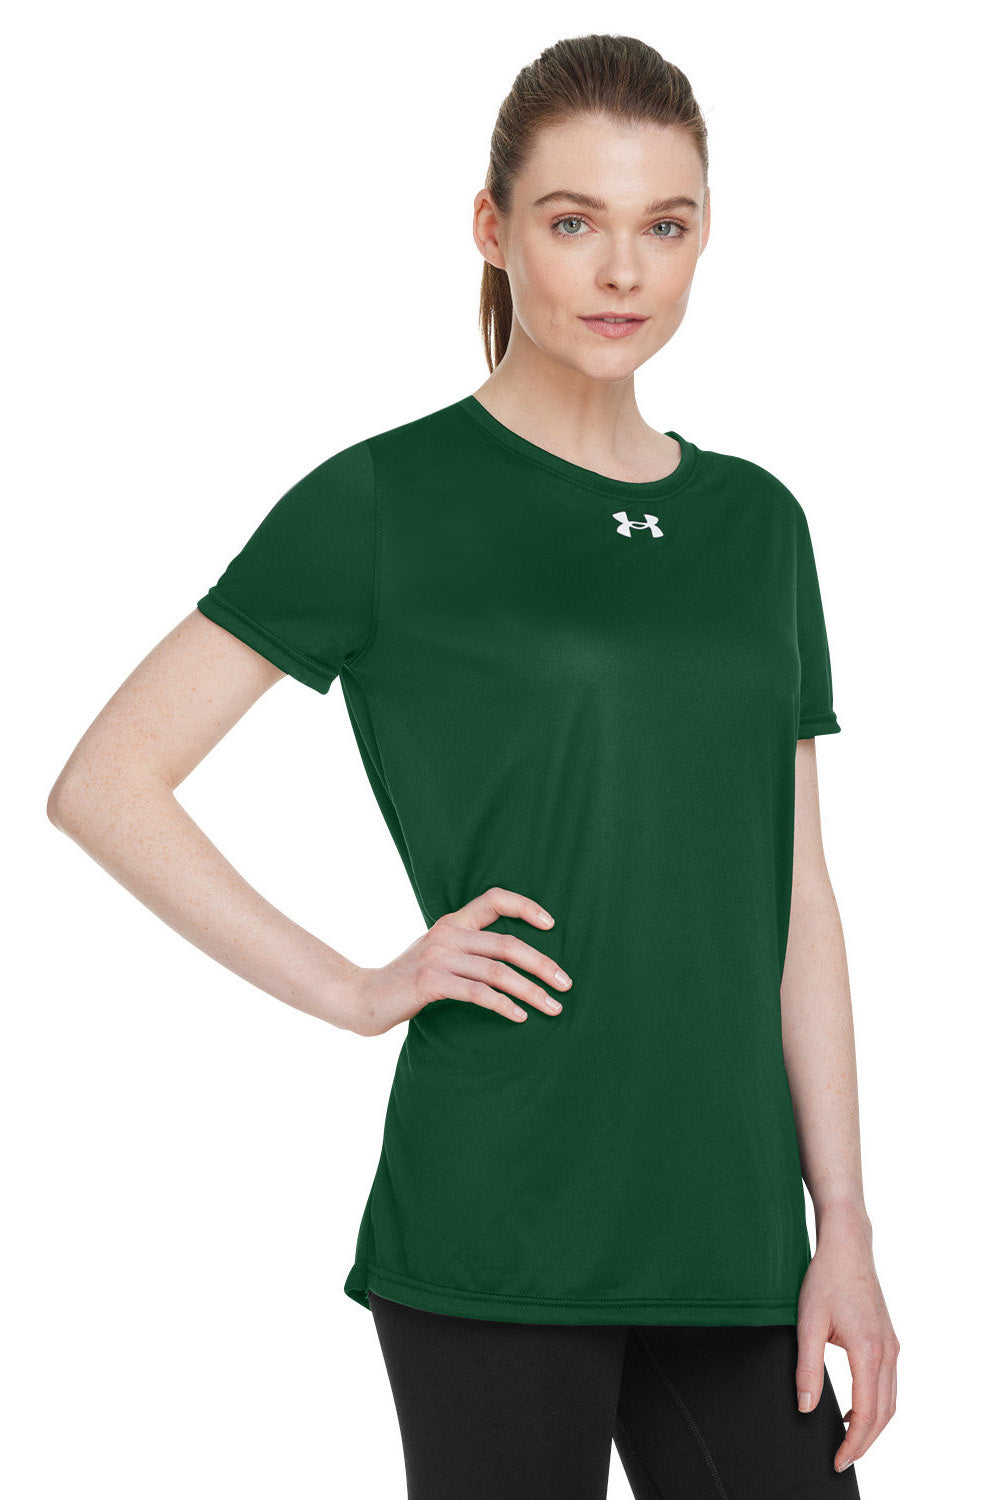 Under Armour 1376847 Womens Team Tech Moisture Wicking Short Sleeve Crewneck T-Shirt Forest Green Model 3Q